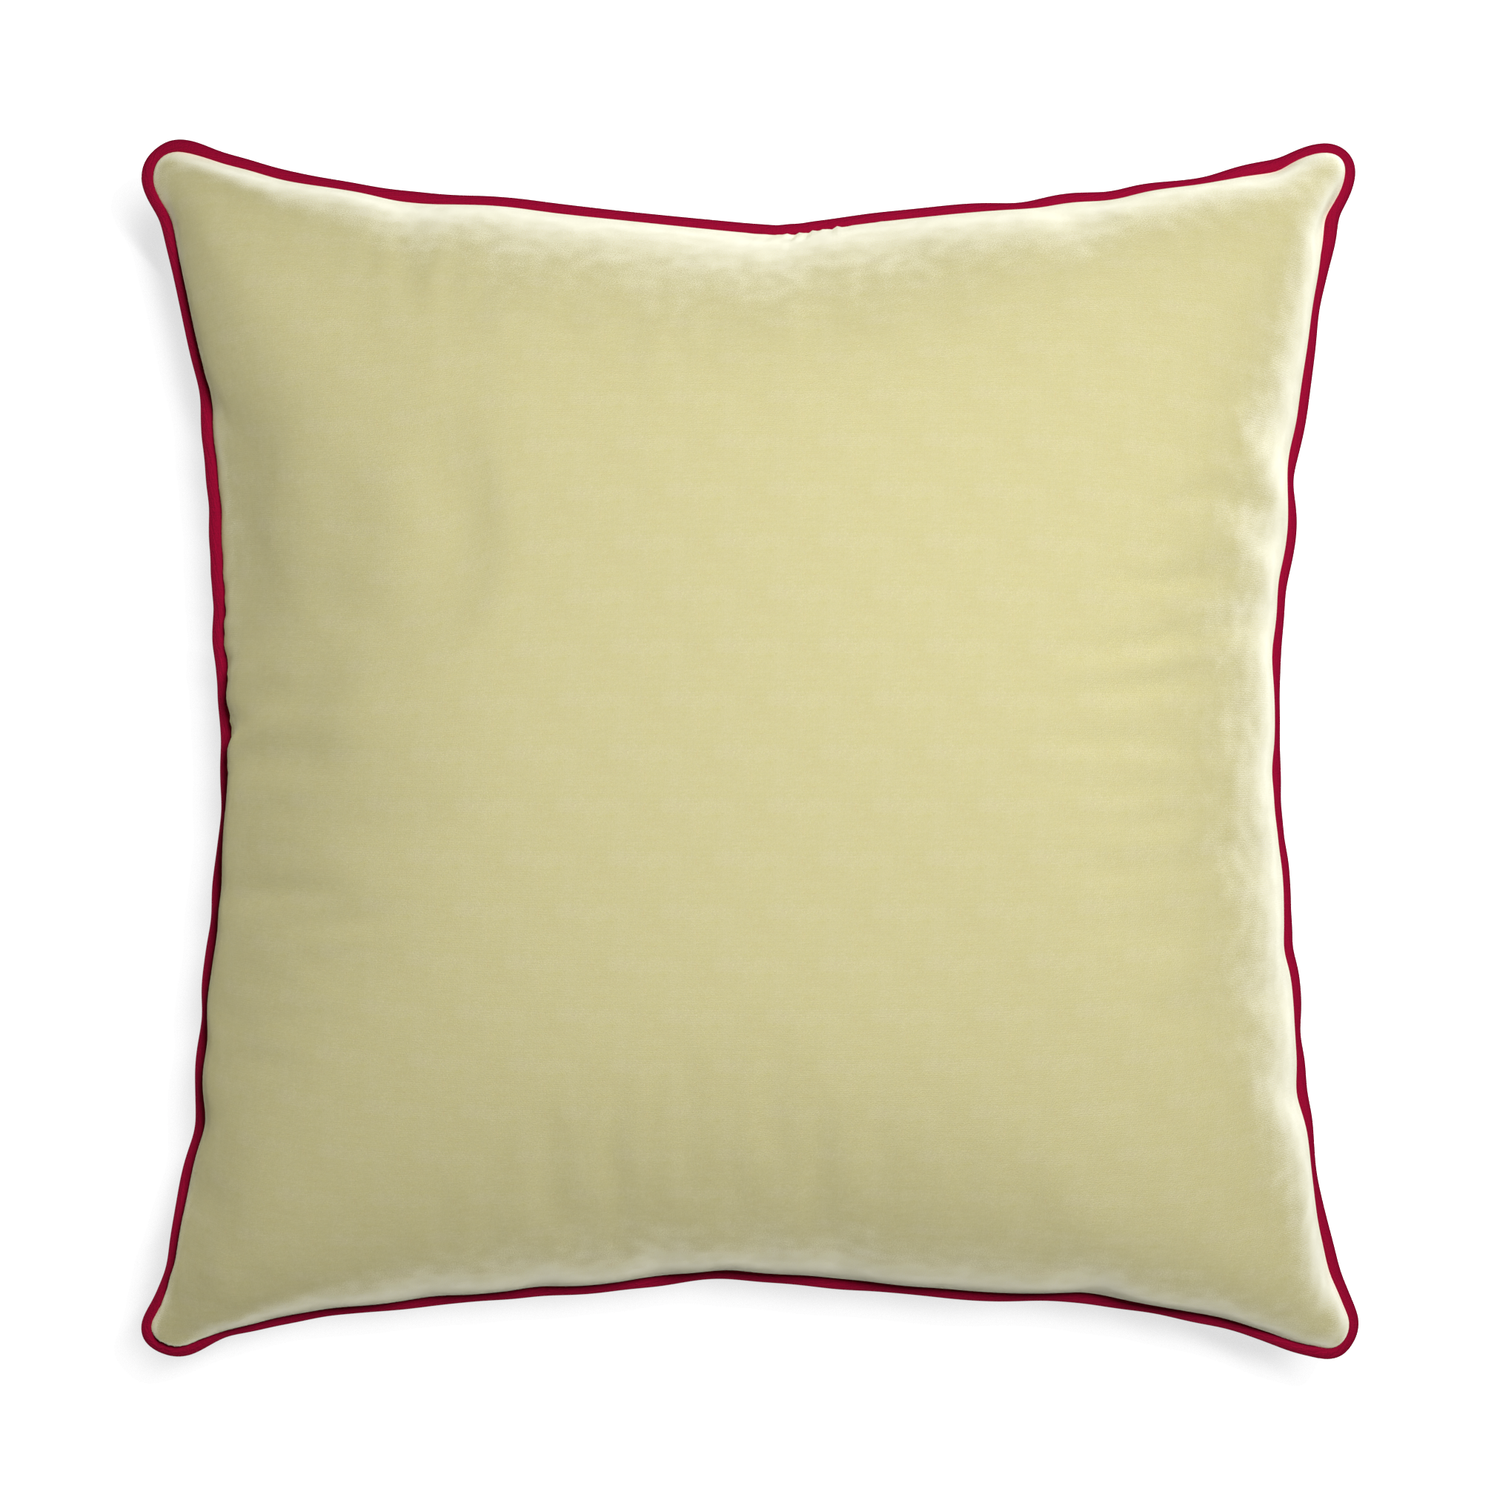 Euro-sham pear velvet custom pillow with raspberry piping on white background